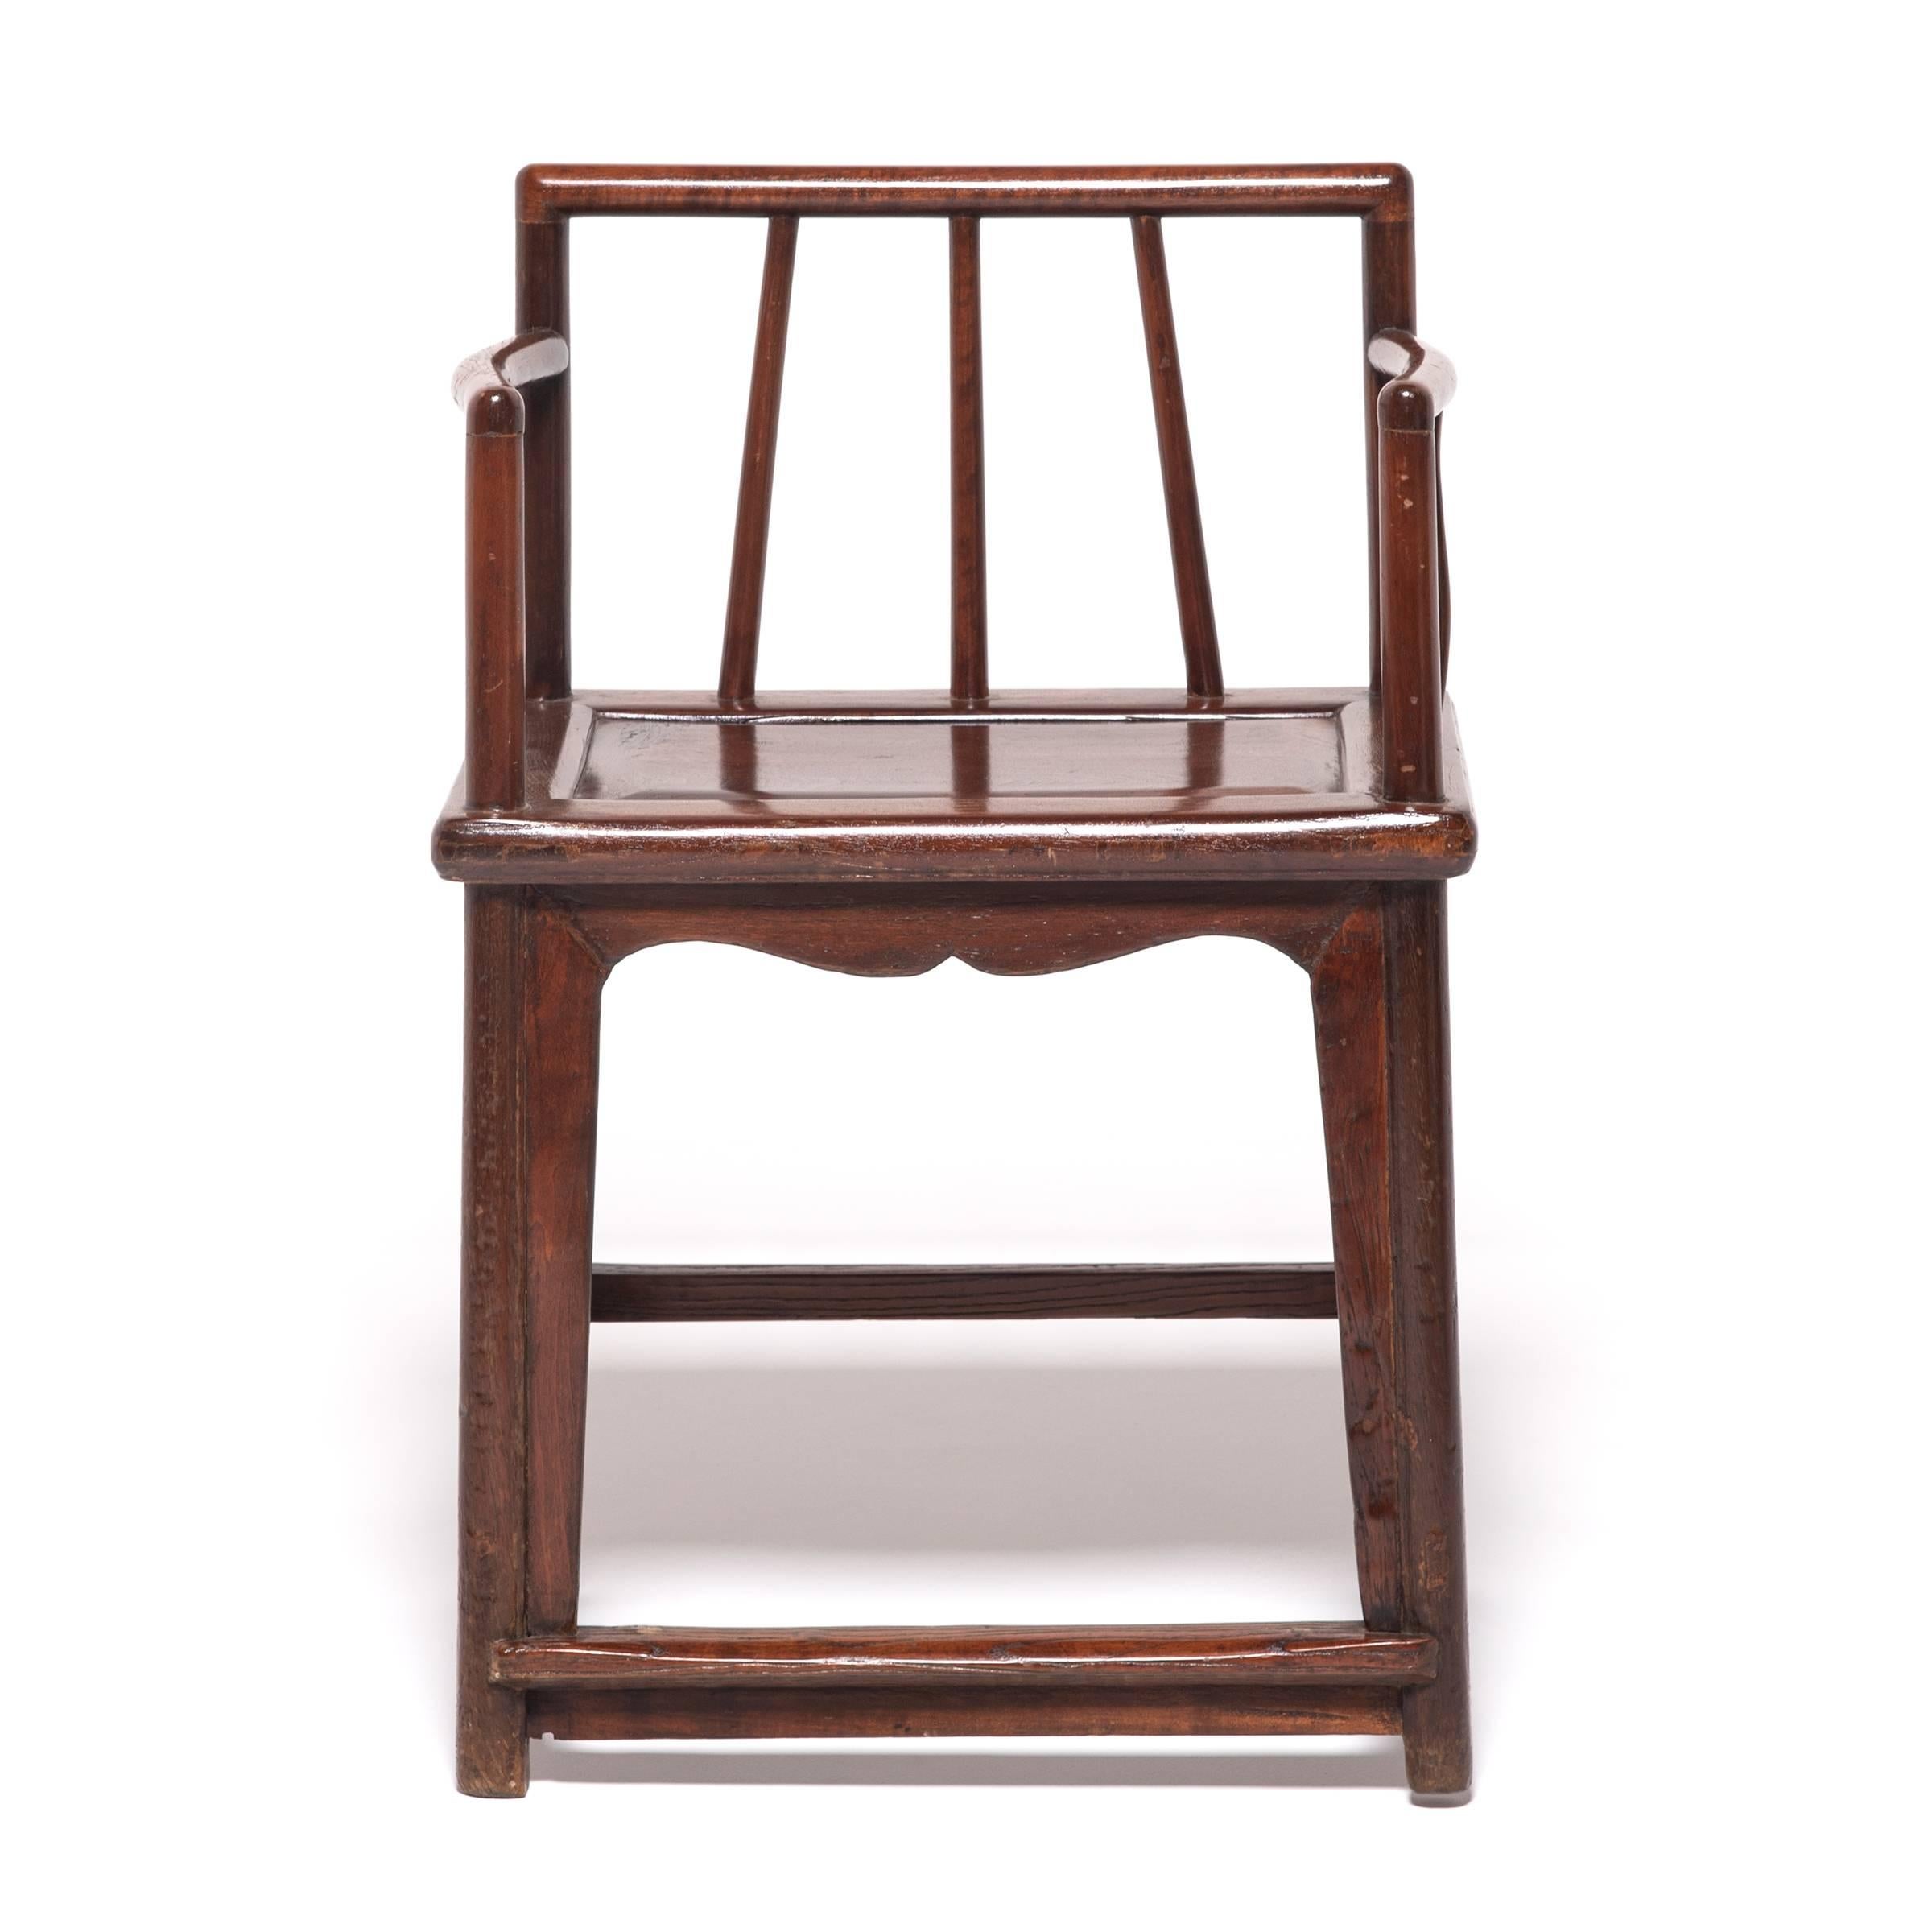 Ces fauteuils à dossier en fuseau du XIXe siècle doivent leur conception gracieuse aux styles et aux techniques qui ont émergé pendant la dynastie Ming, l'âge d'or de la conception des meubles chinois. Construites avec des assemblages à tenon et